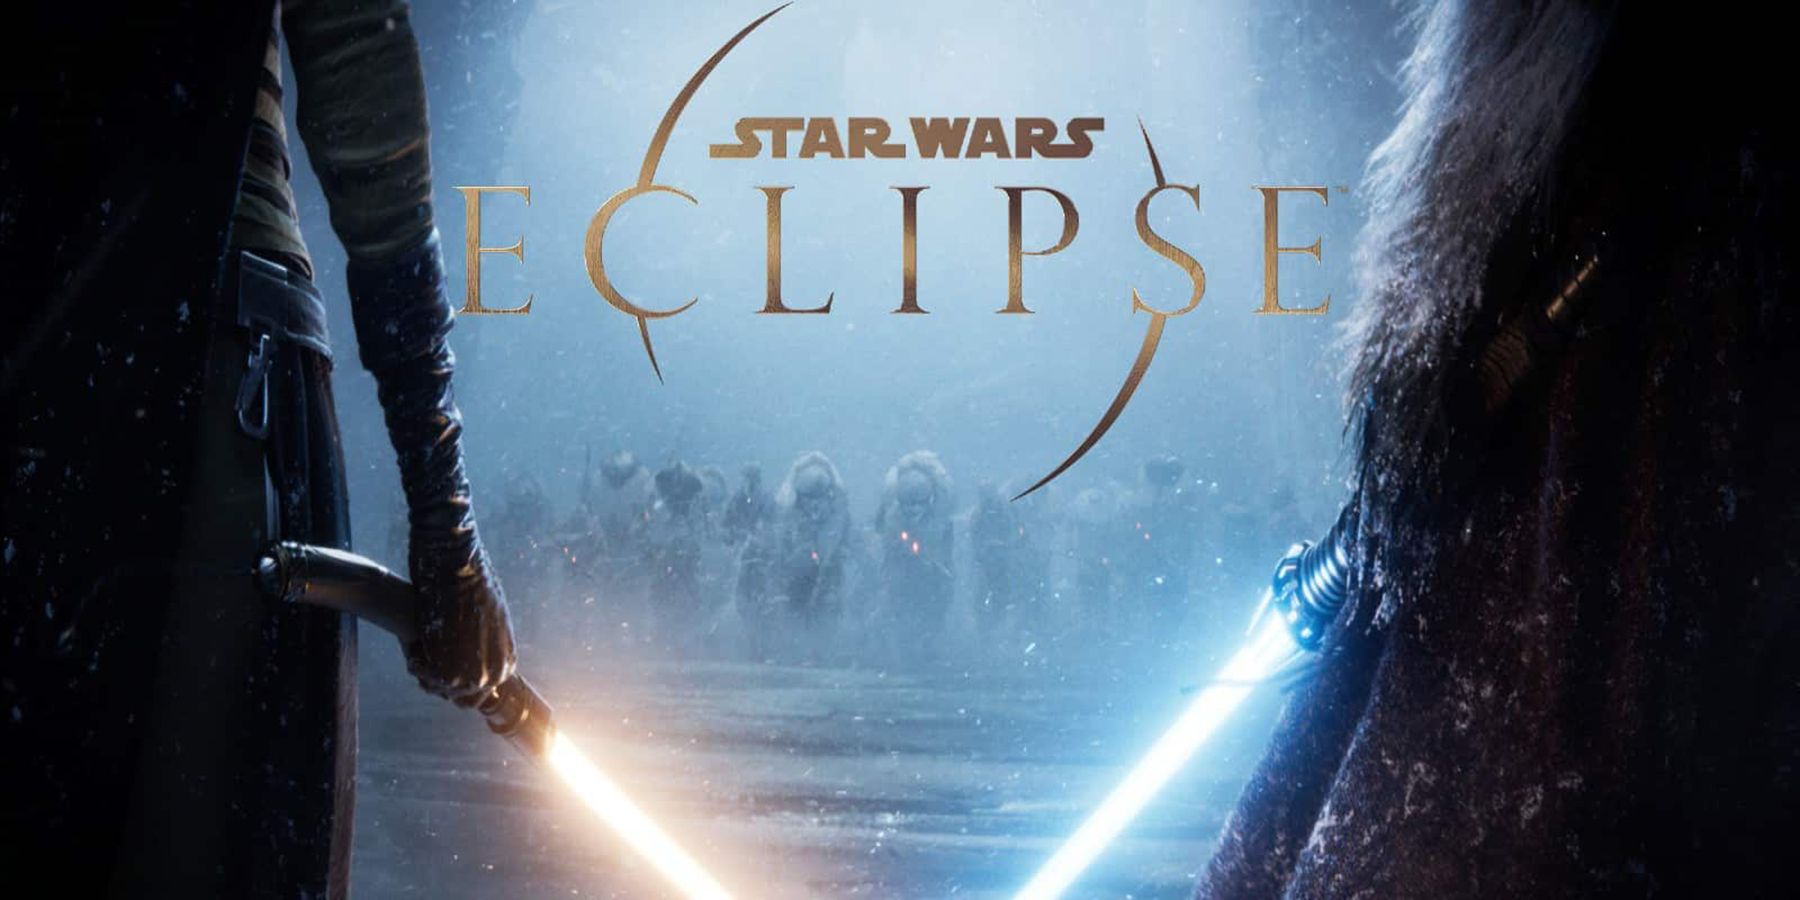 Probleme mit Star Wars Eclipse sind bekannt geworden. Es ist derzeit nicht bekannt, was er nach seinem Ausscheiden aus dem Amt tun wird